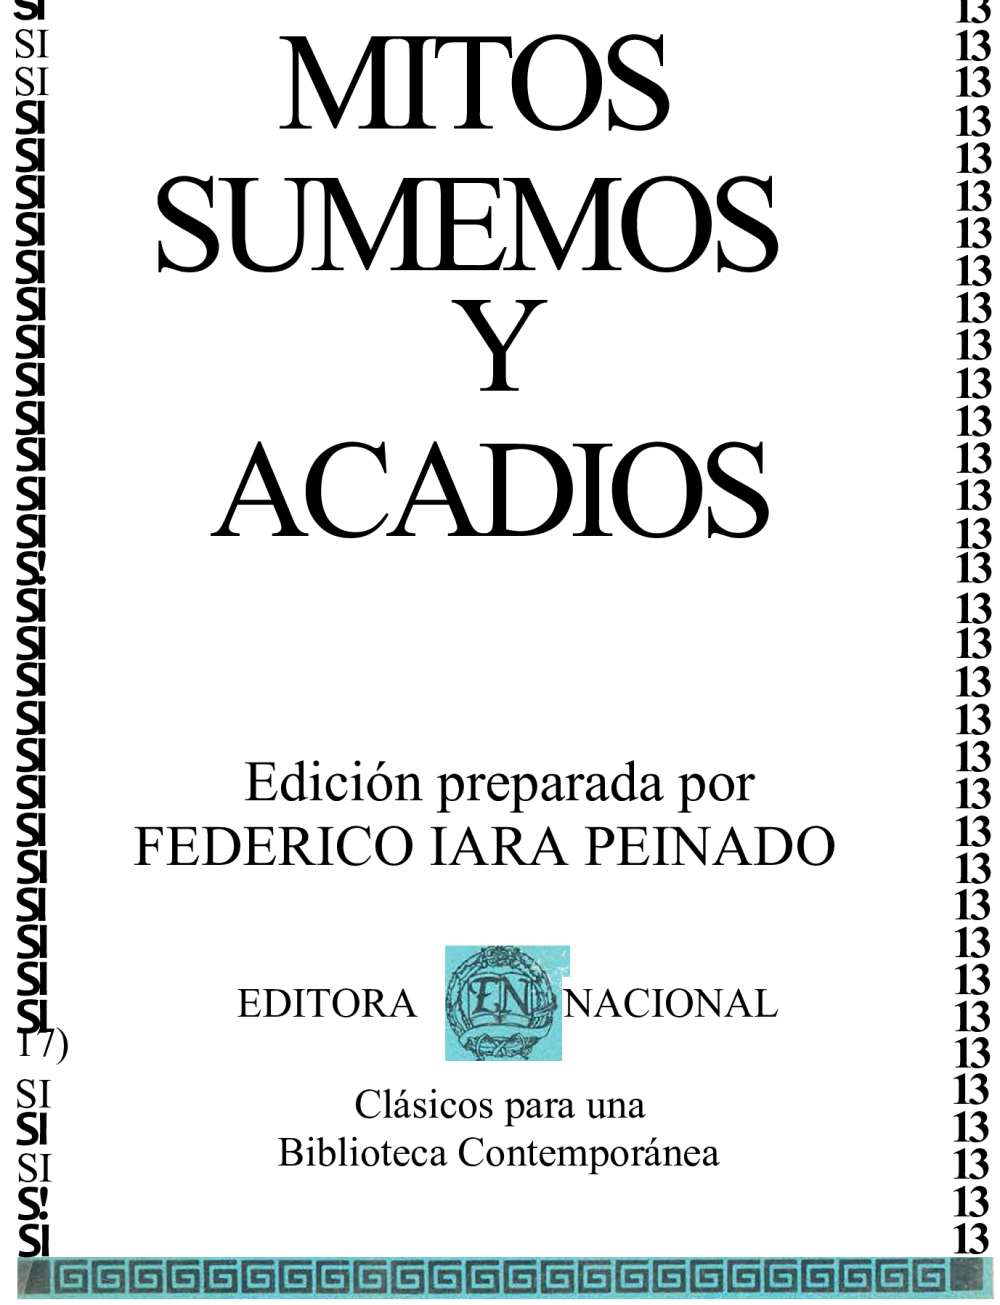 Mitos Sumerios y Acadios por Federico Lara Peinado - pdf Docer.com.ar